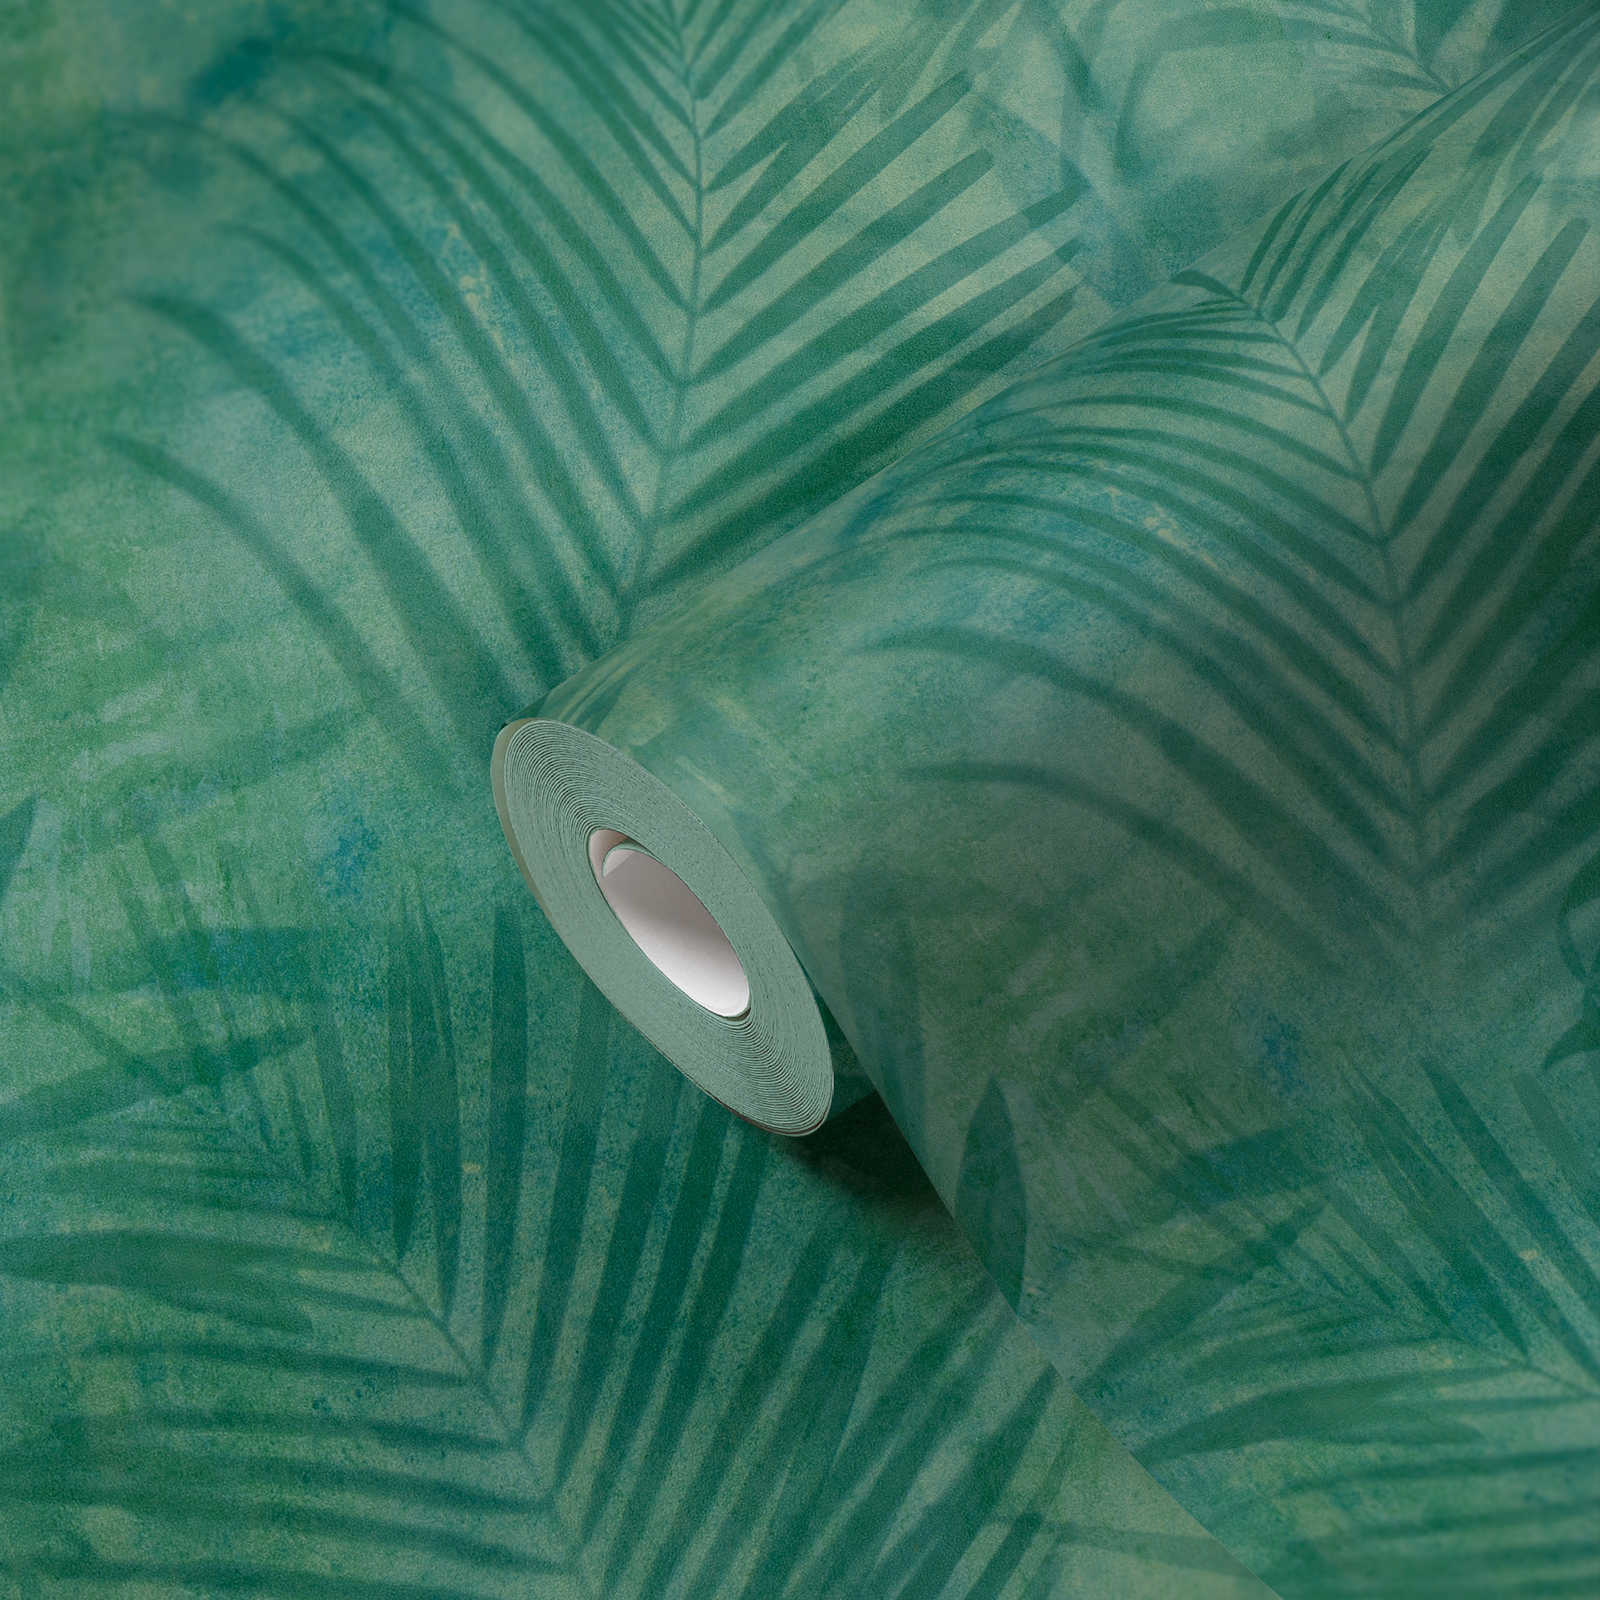             Wallpaper palm tree pattern in linen look - green, blue, yellow
        